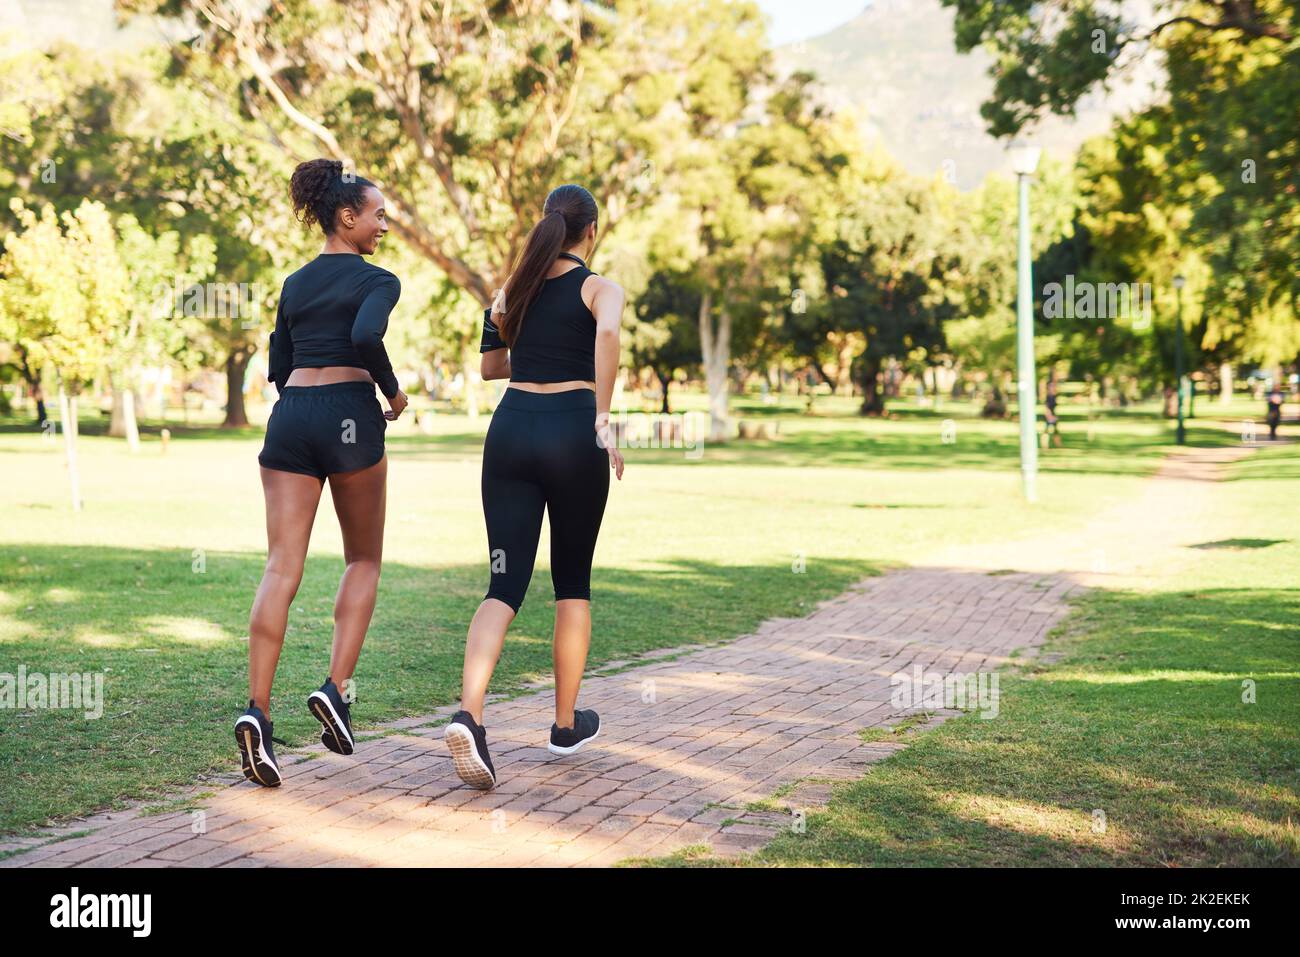 Waren fast fertig. Rückansicht von zwei attraktiven jungen Frauen, die tagsüber im Park nebeneinander laufen. Stockfoto